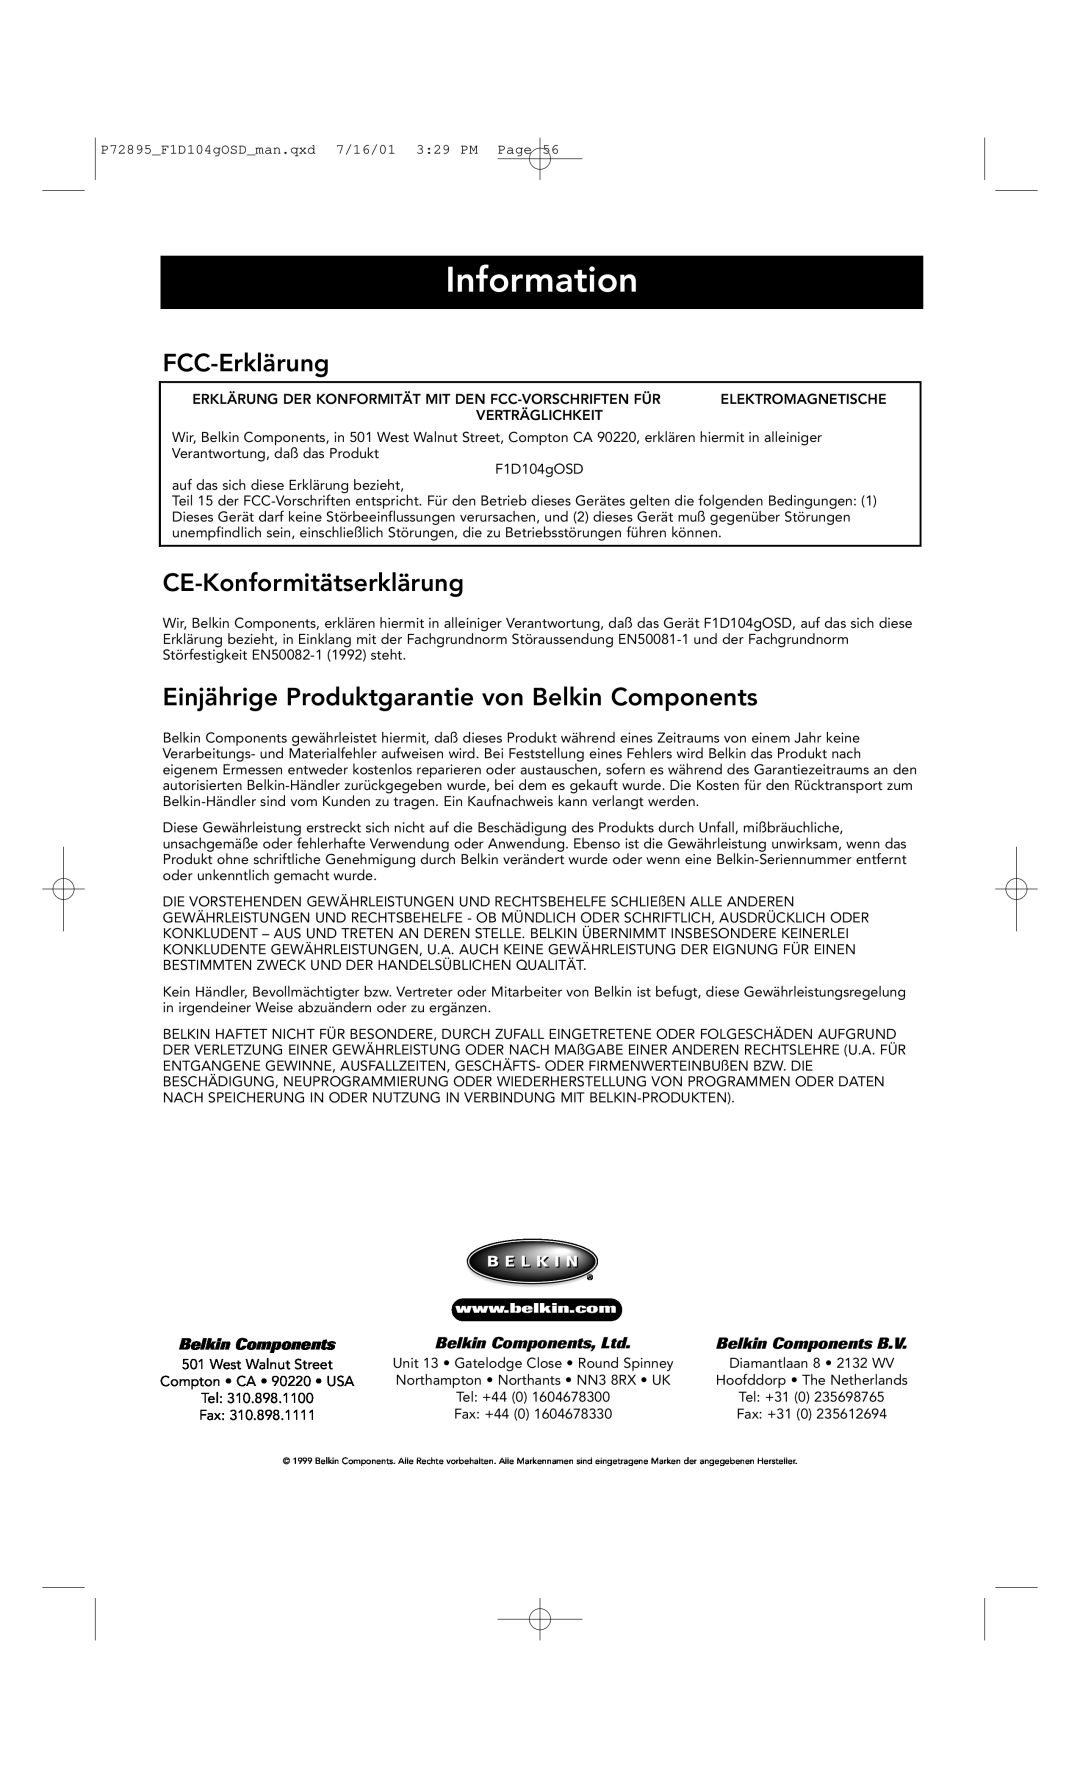 Belkin F1D104-OSD FCC-Erklärung, CE-Konformitätserklärung, Einjährige Produktgarantie von Belkin Components, Information 